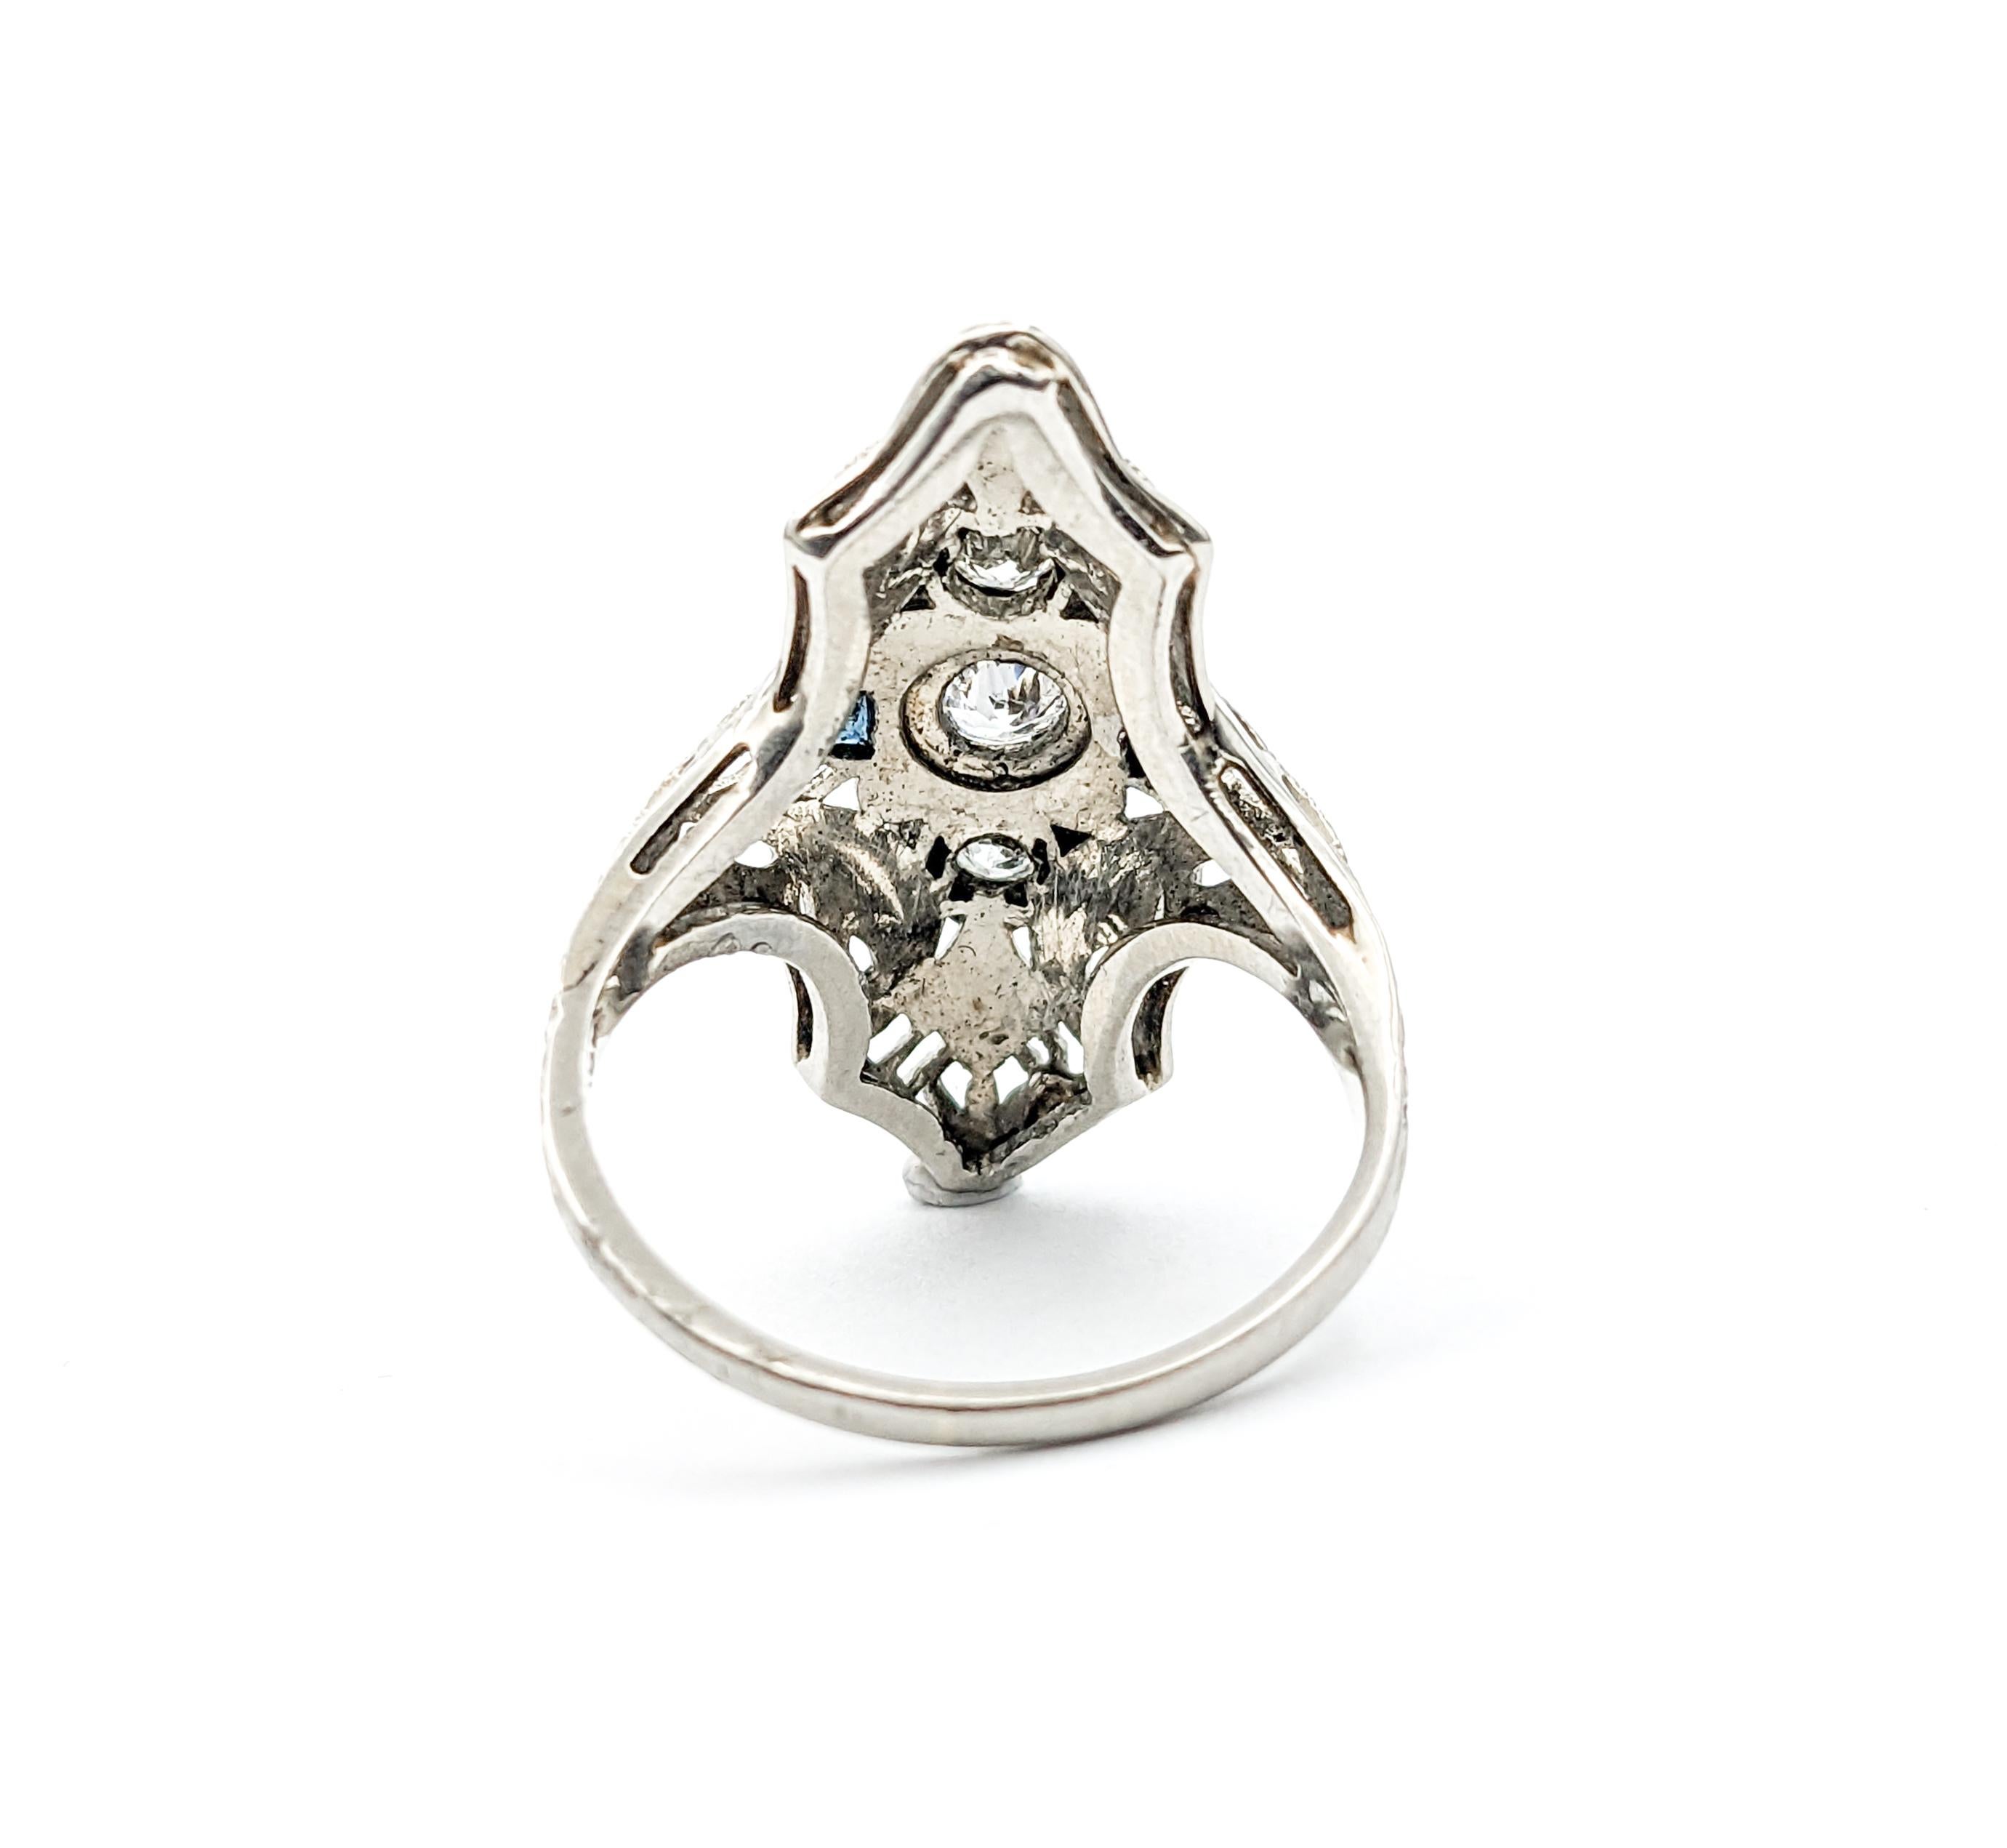 Antique Art Deco Era Diamond & Sapphire Shield Ring In White Gold For Sale 5